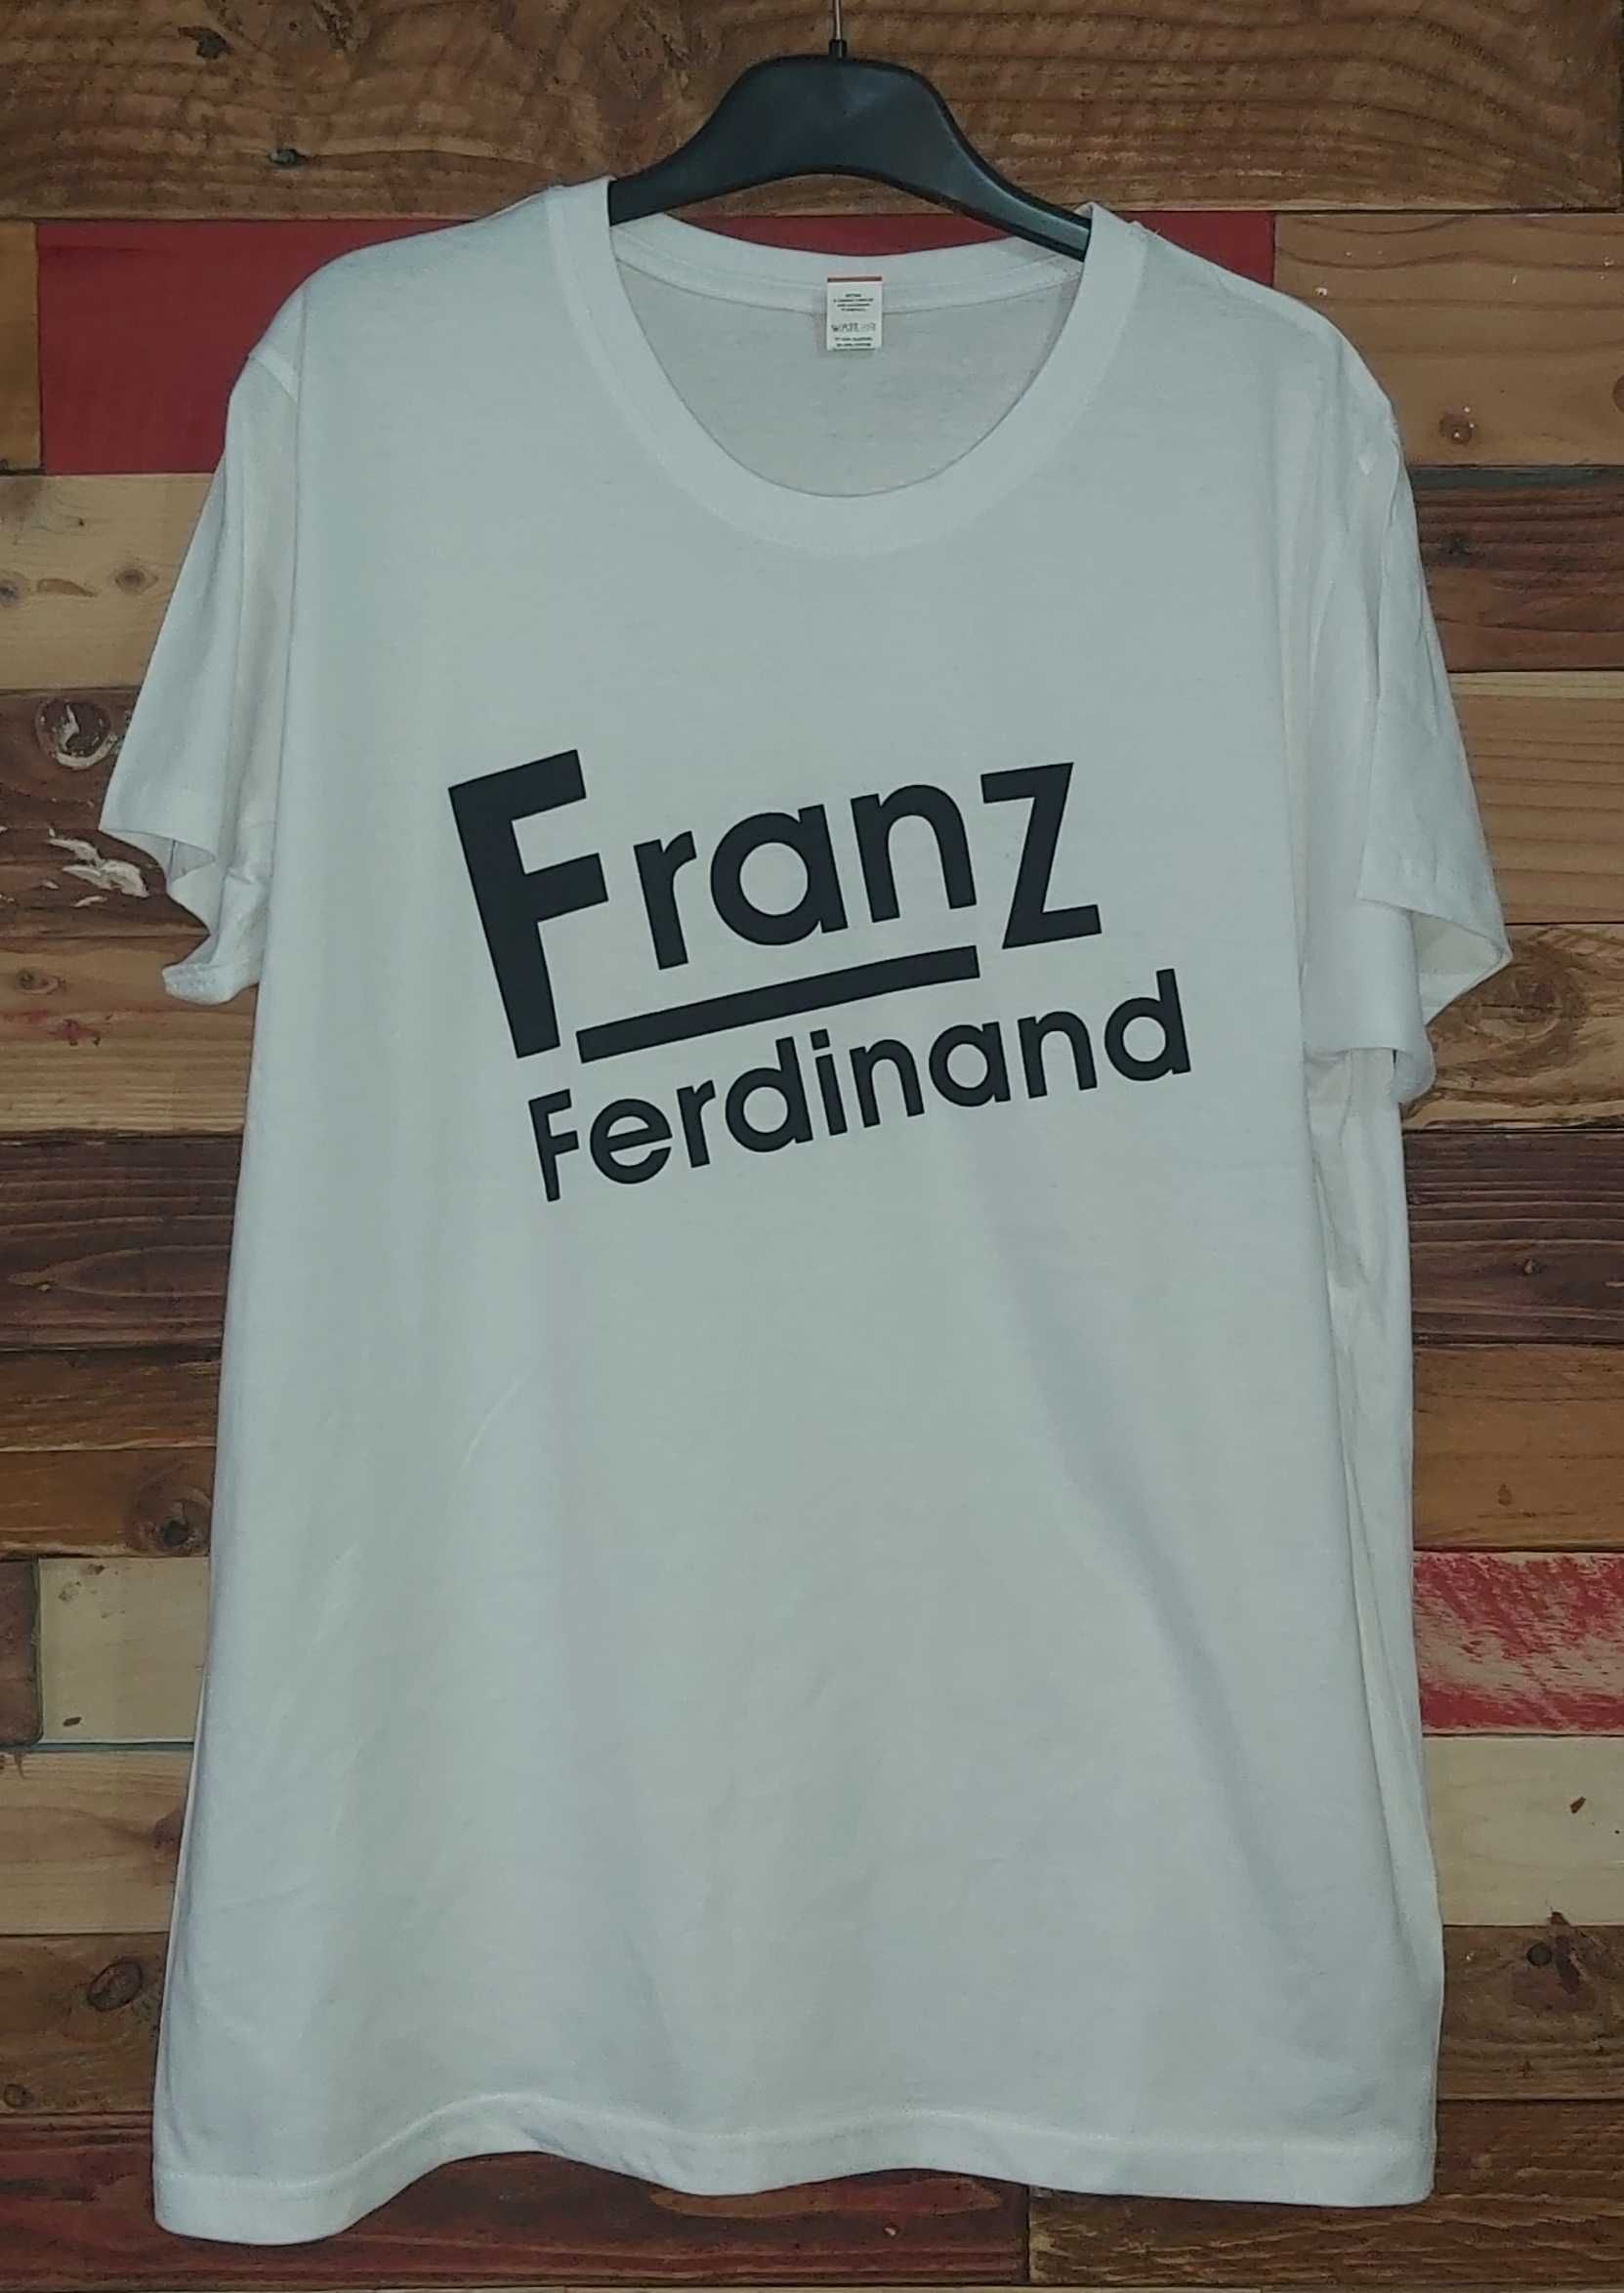 Arctic Monkeys / The Strokes / Franz Ferdinand / Kasabian - T-shirt